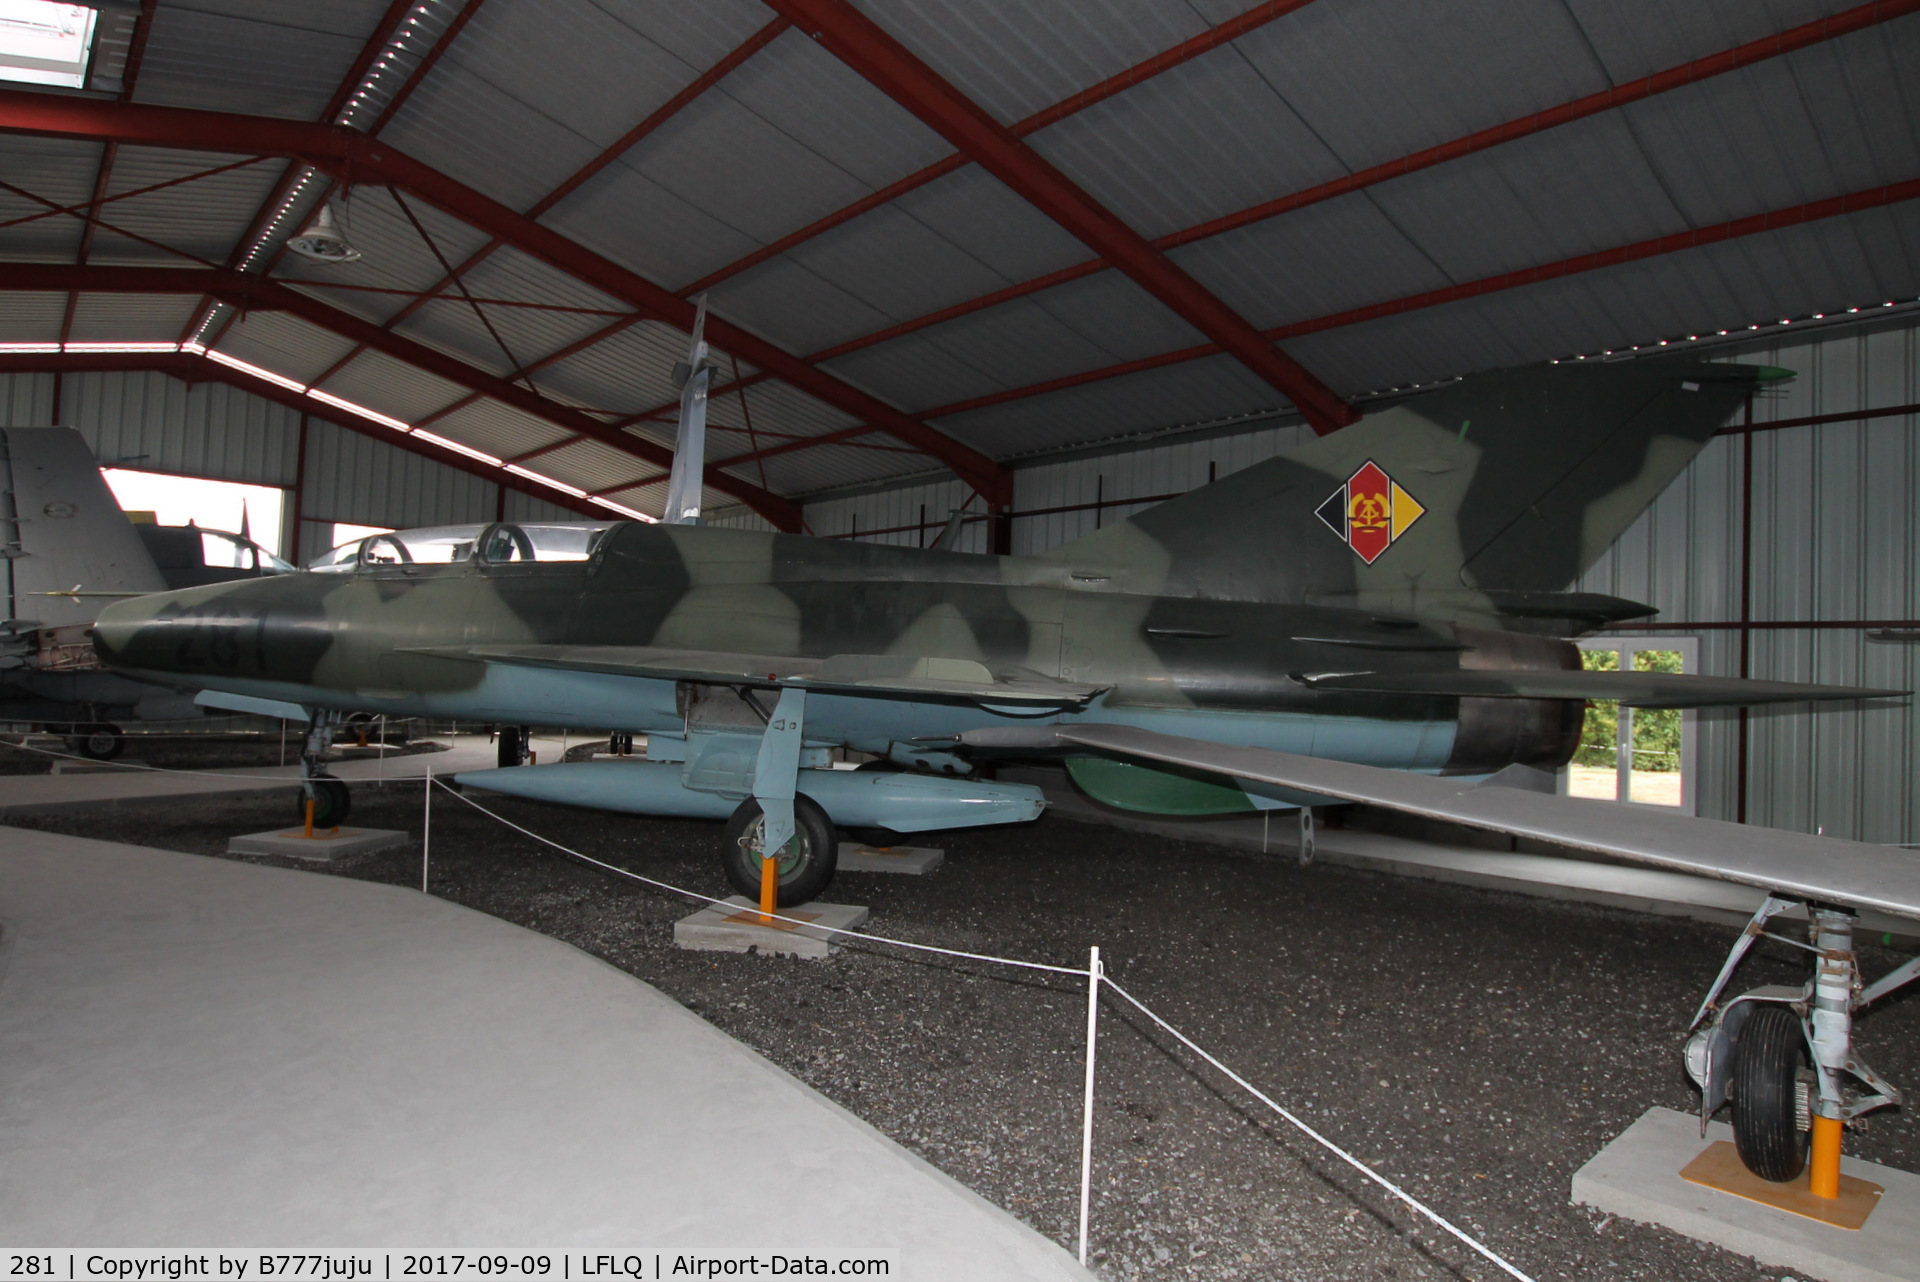 281, Mikoyan-Gurevich MiG-21UT C/N 663820, on display